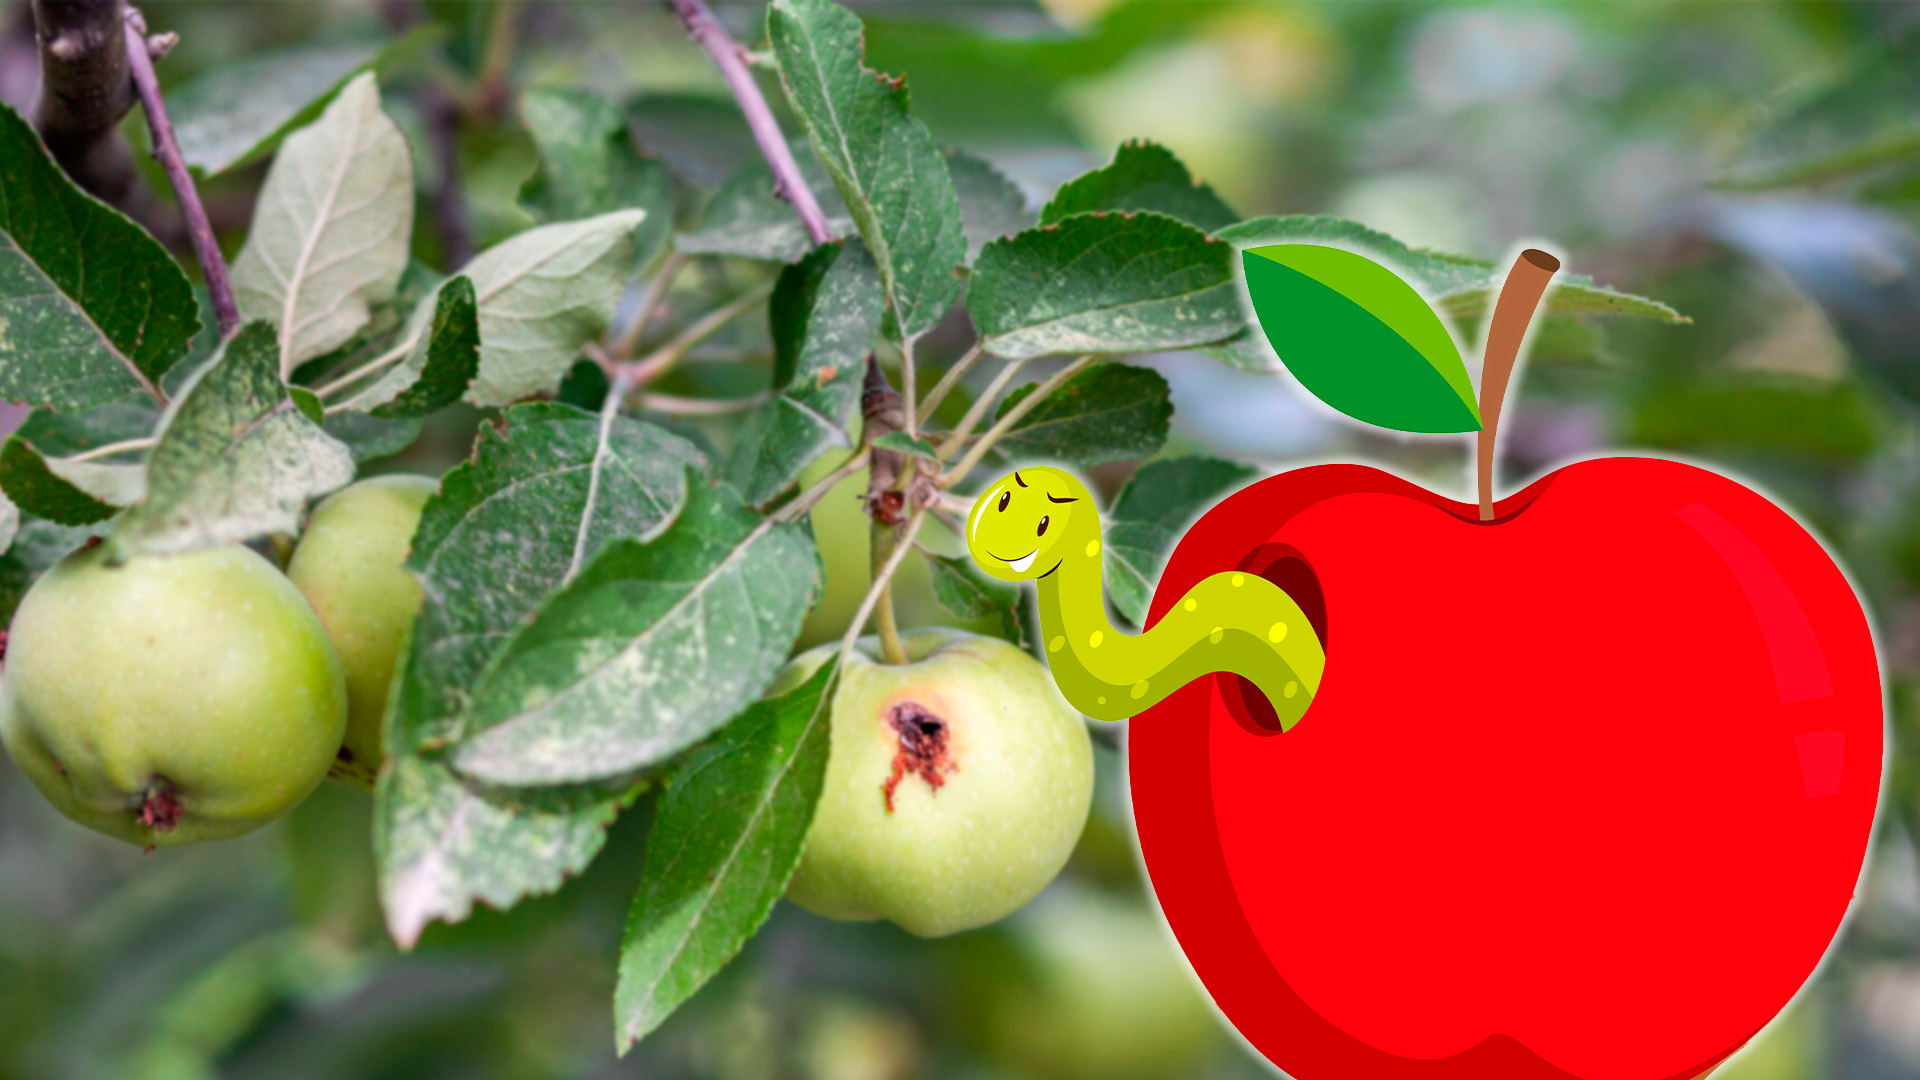 Что может быть хуже - откусив яблоко обнаружить там червяка? — Обсуждай